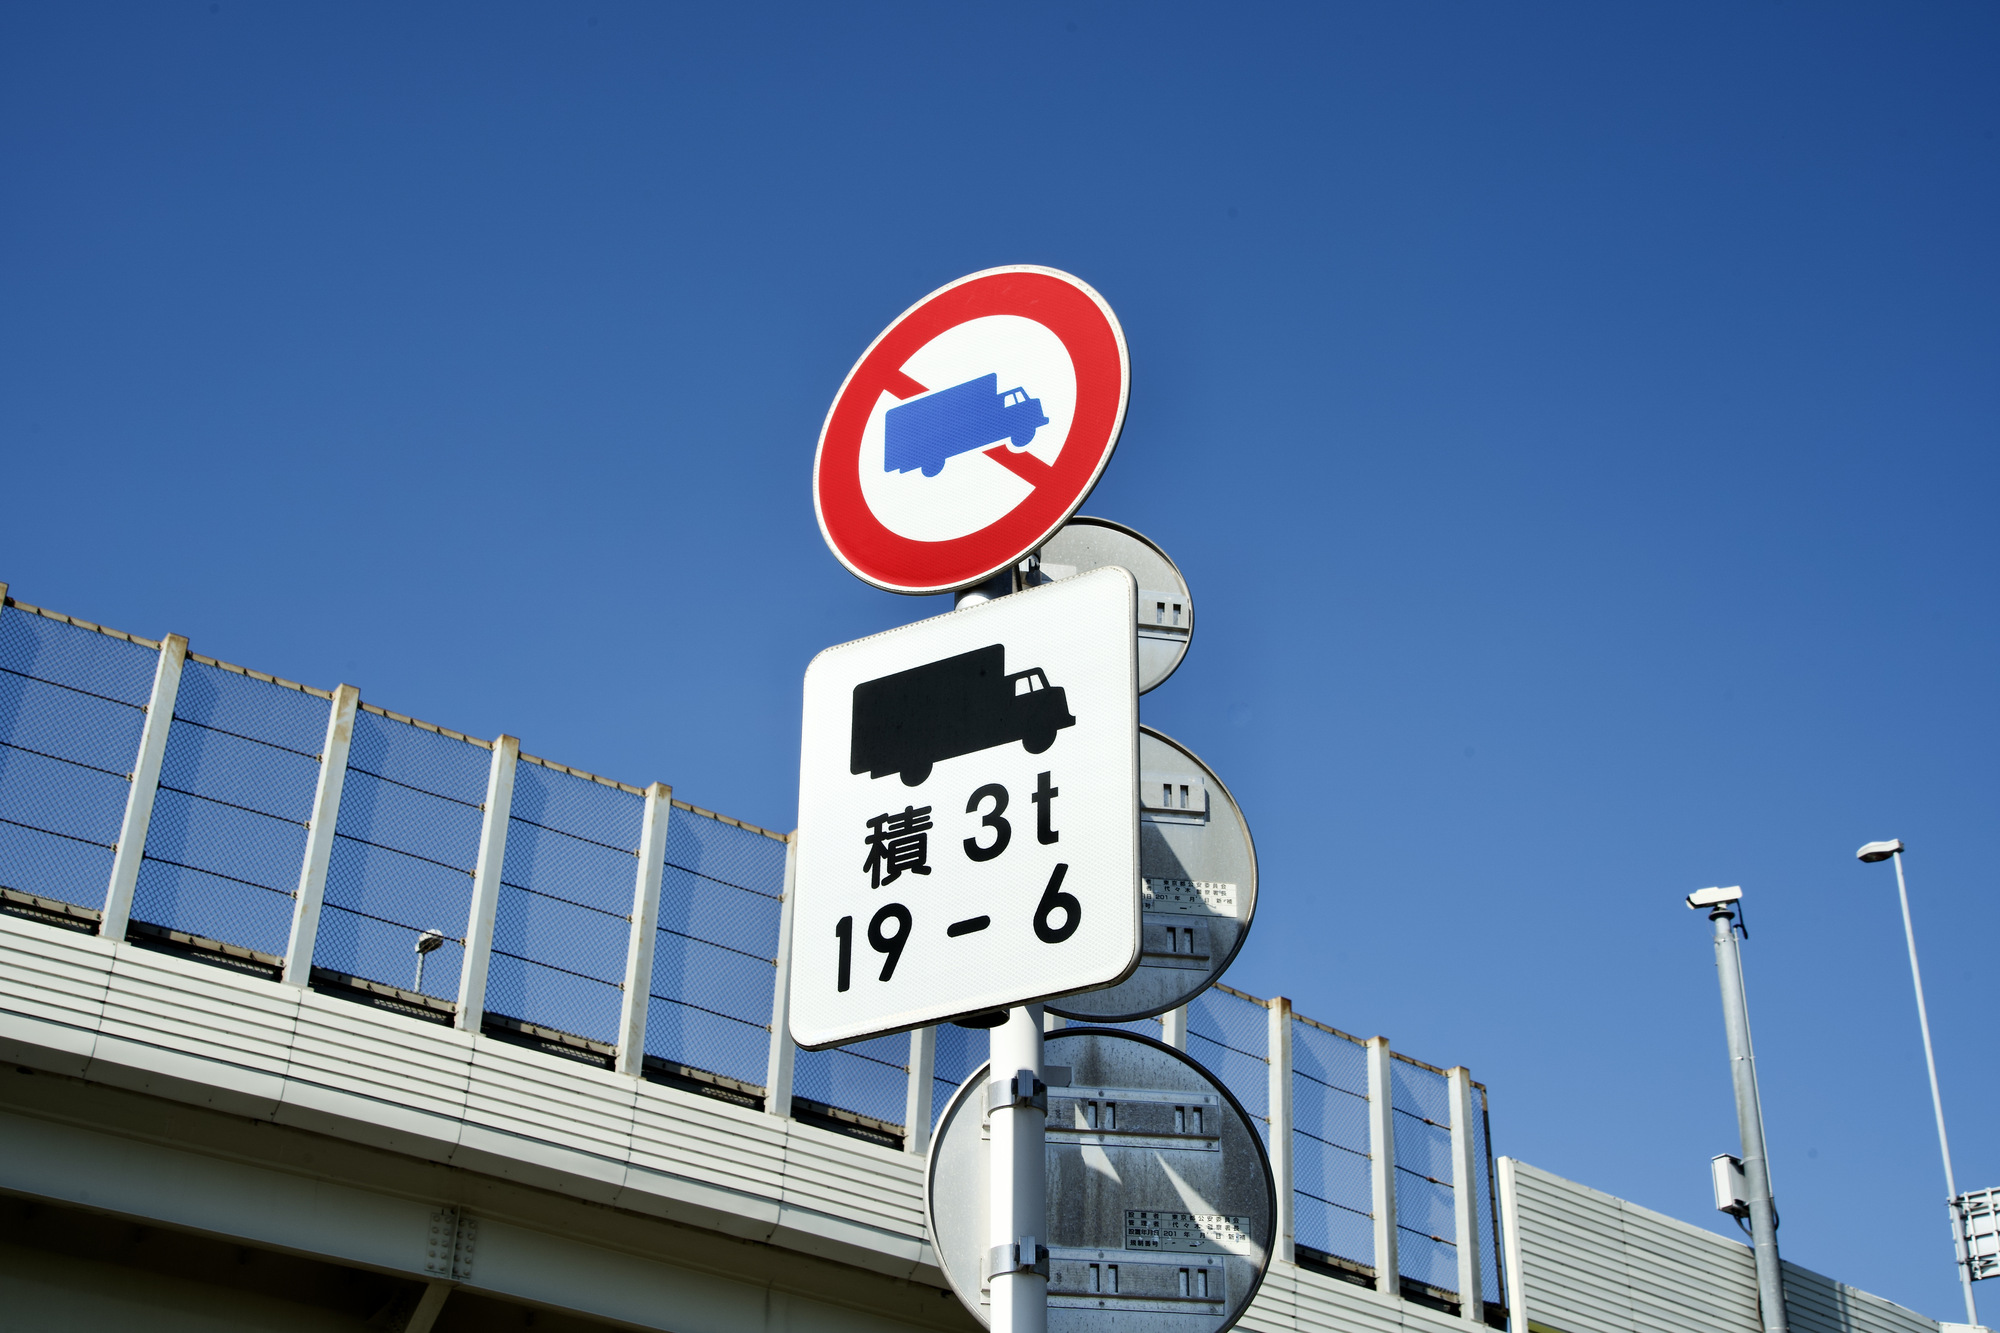 トラックの標識に関する、知っておきたい注意点やルール | トラックの 